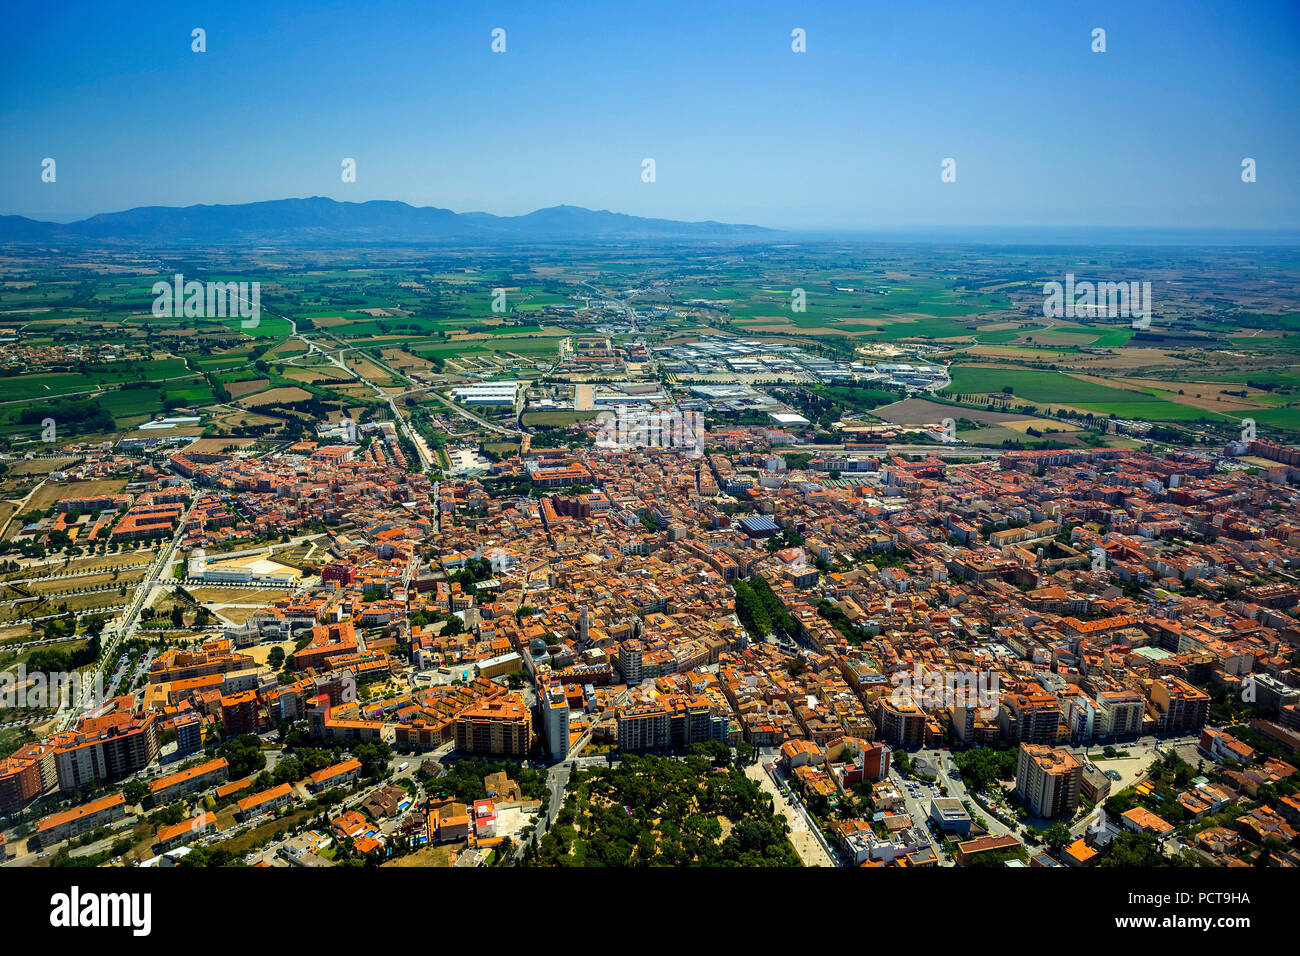 Vista general de la ciudad de Figueres, Costa Brava, Cataluña, España Foto de stock